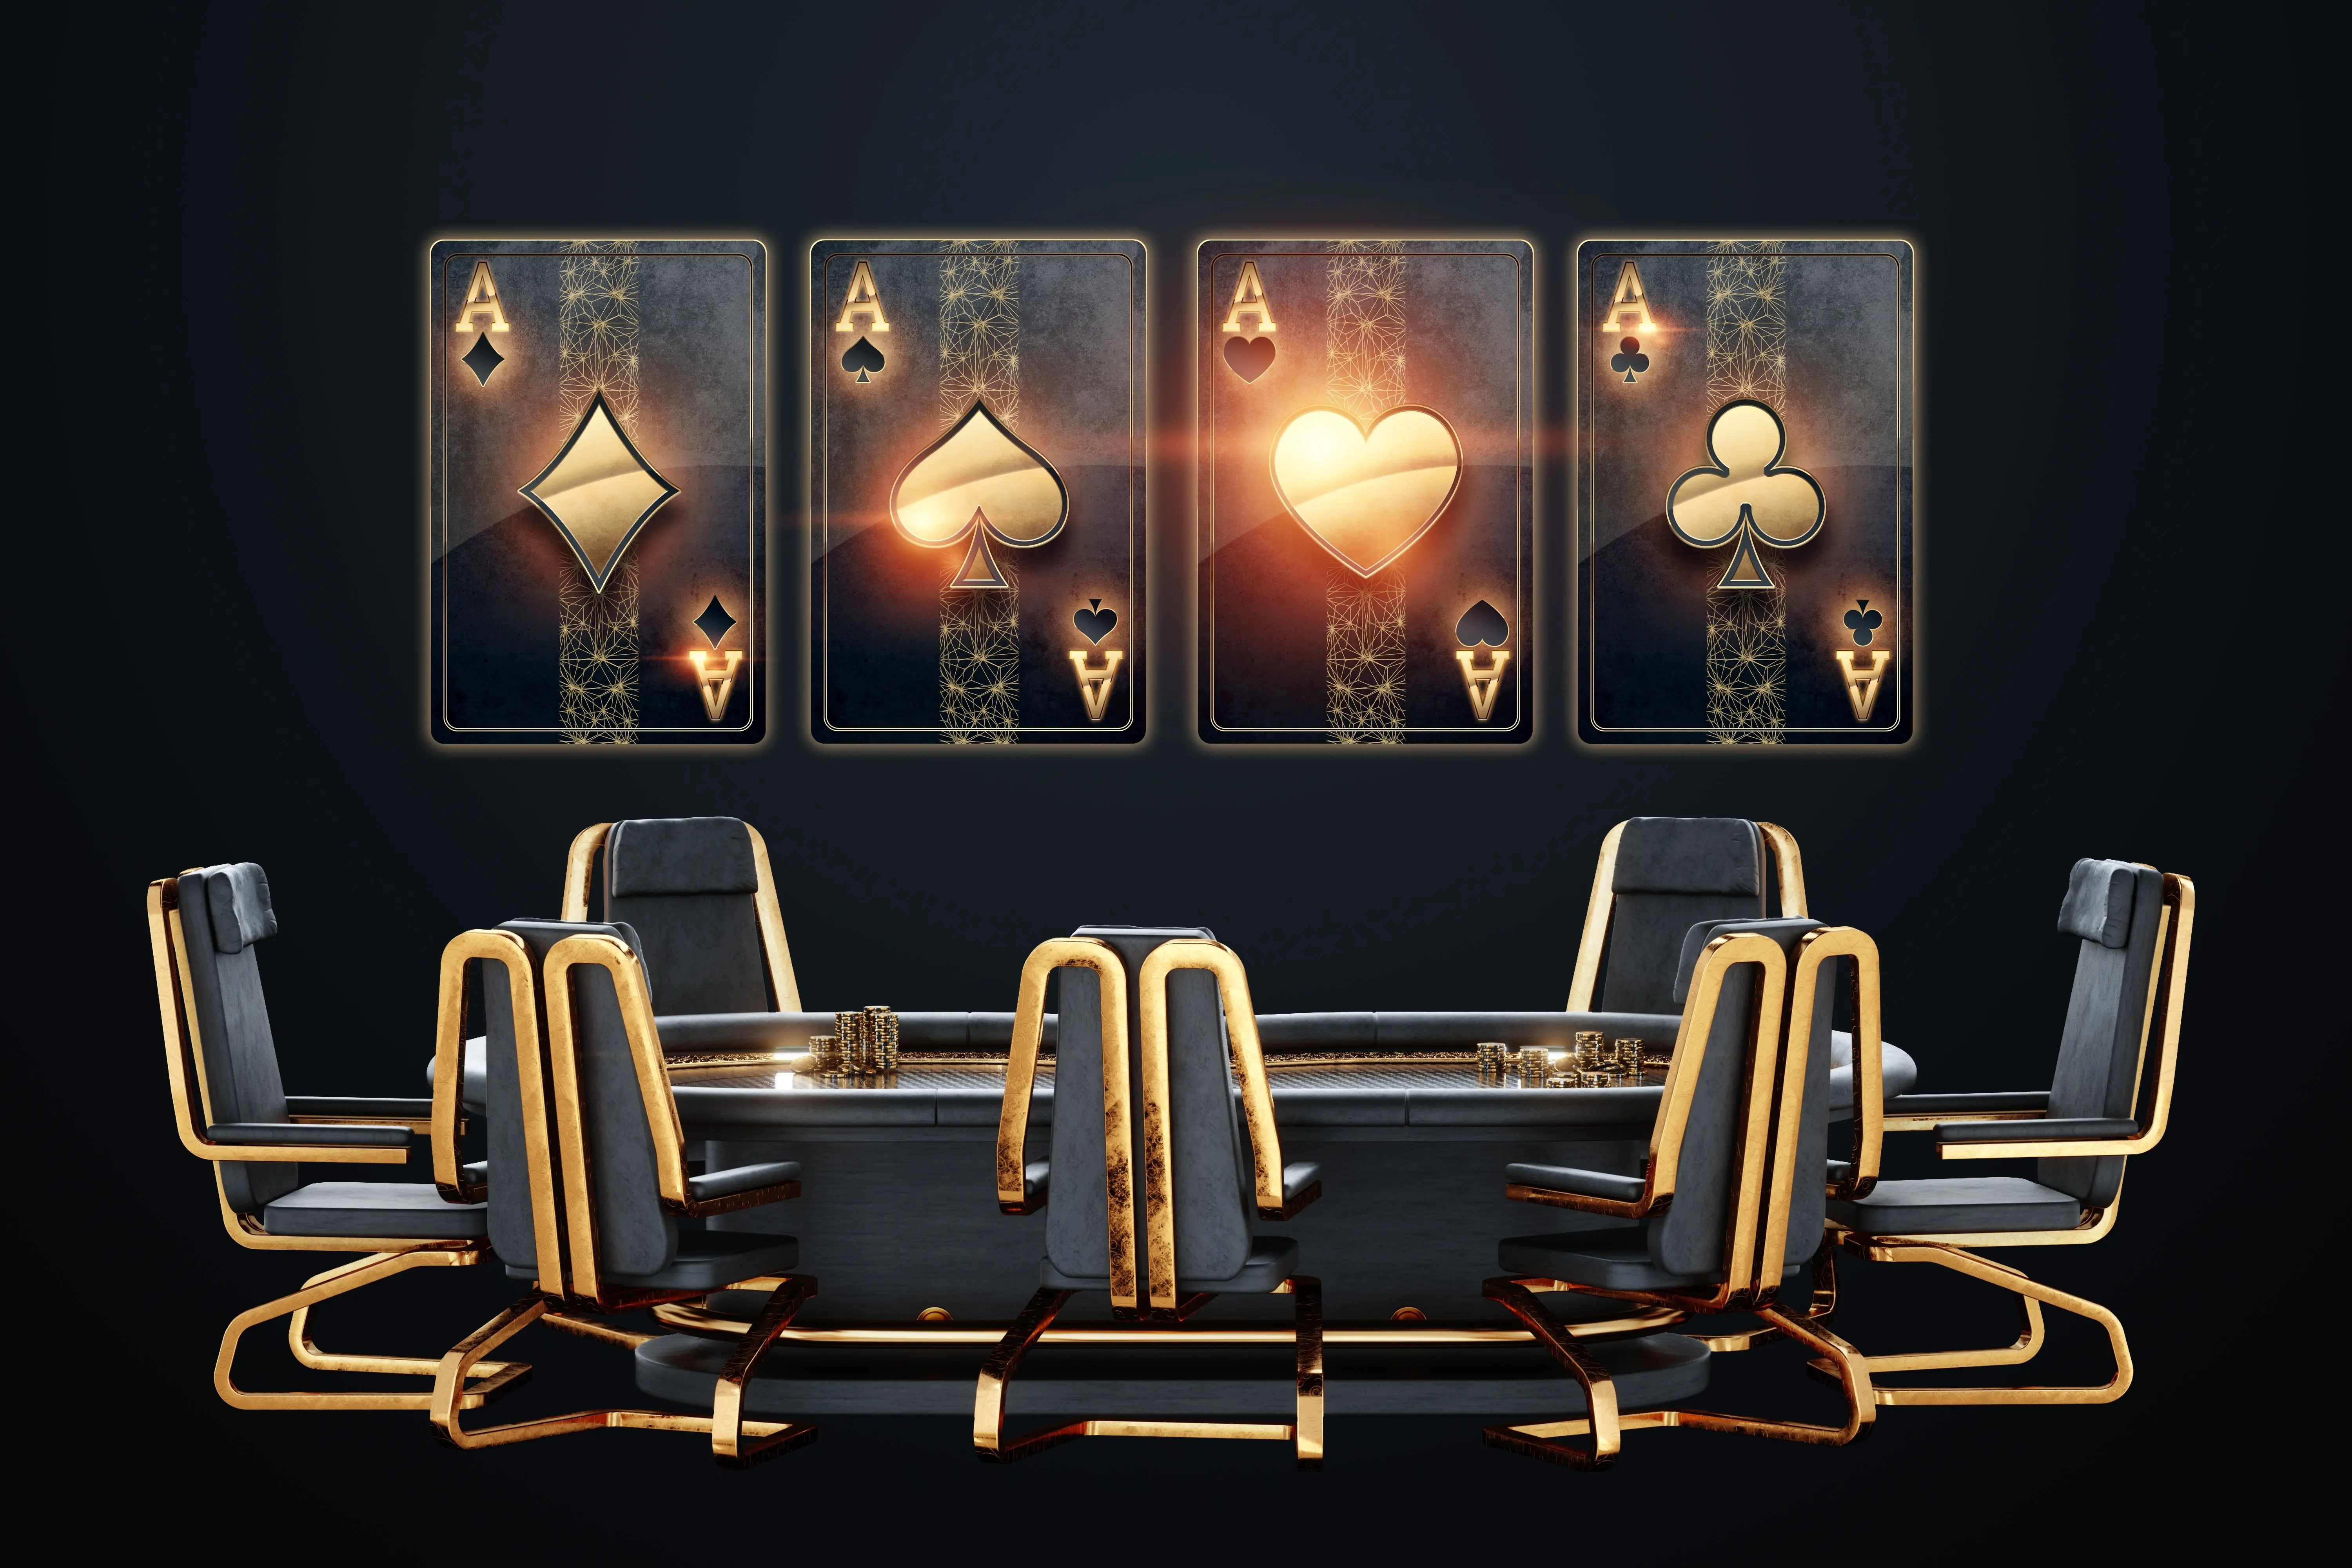 Стати професіоналом легко: підбірка додатків, що допоможуть навчитися грати в покер.